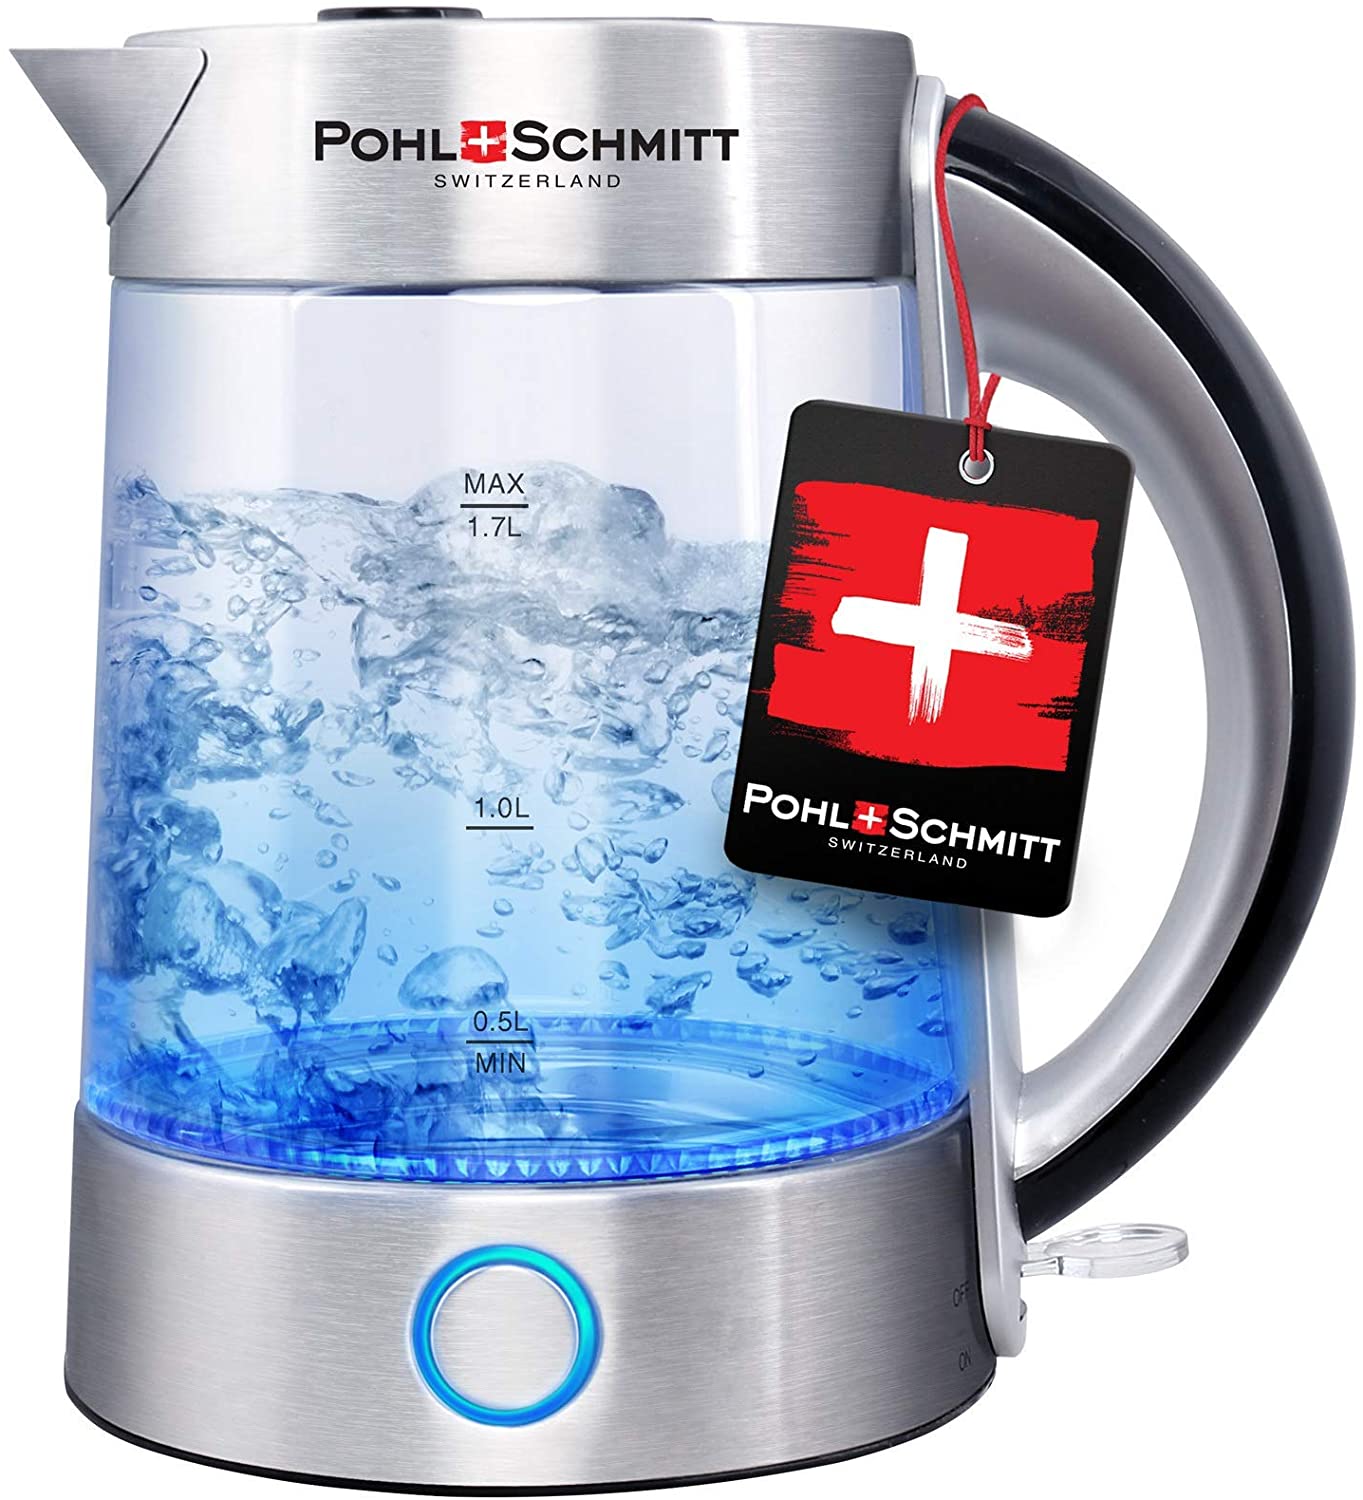 波尔施密特1.7 l玻璃电热水壶